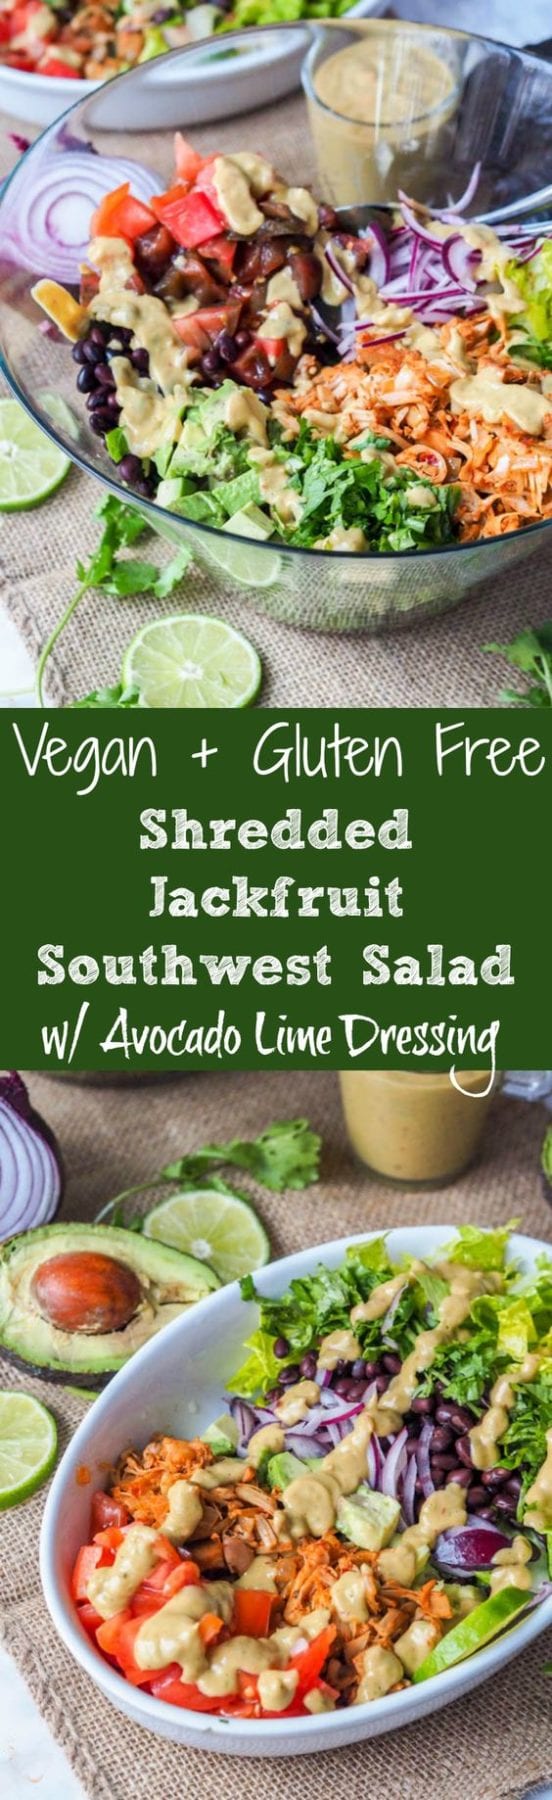 Jackfruit Pulled Pork Vegan Southwest Salad with Avocado Lime Dressing